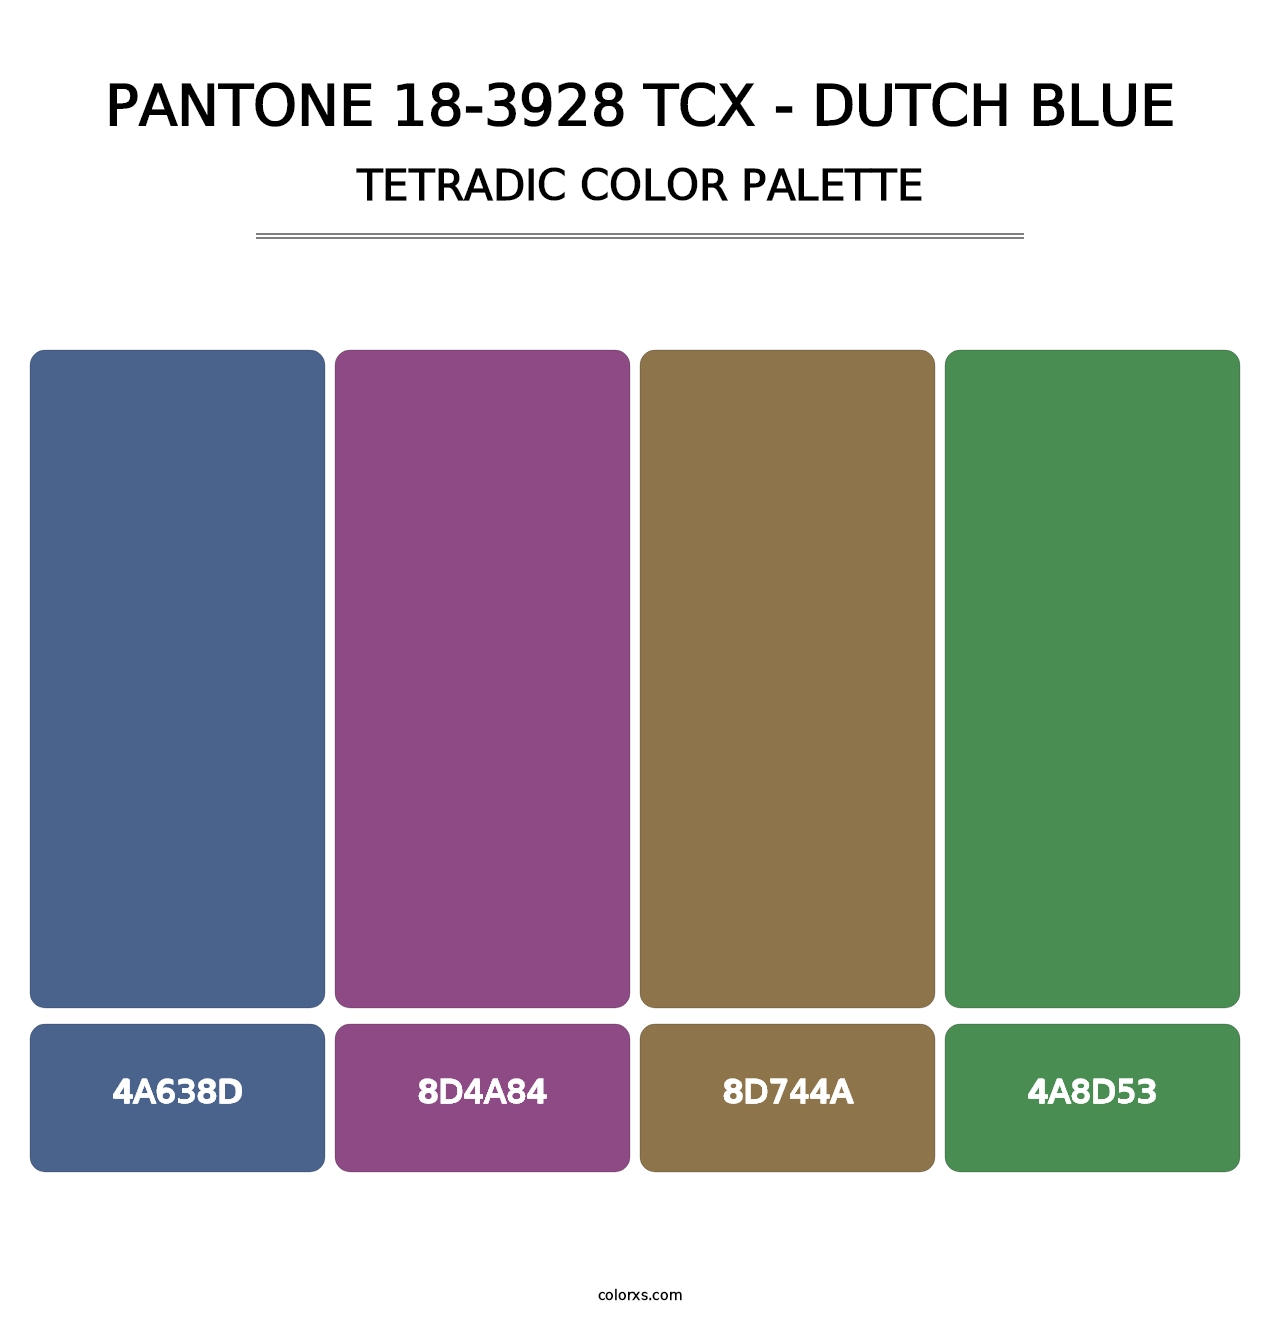 PANTONE 18-3928 TCX - Dutch Blue - Tetradic Color Palette